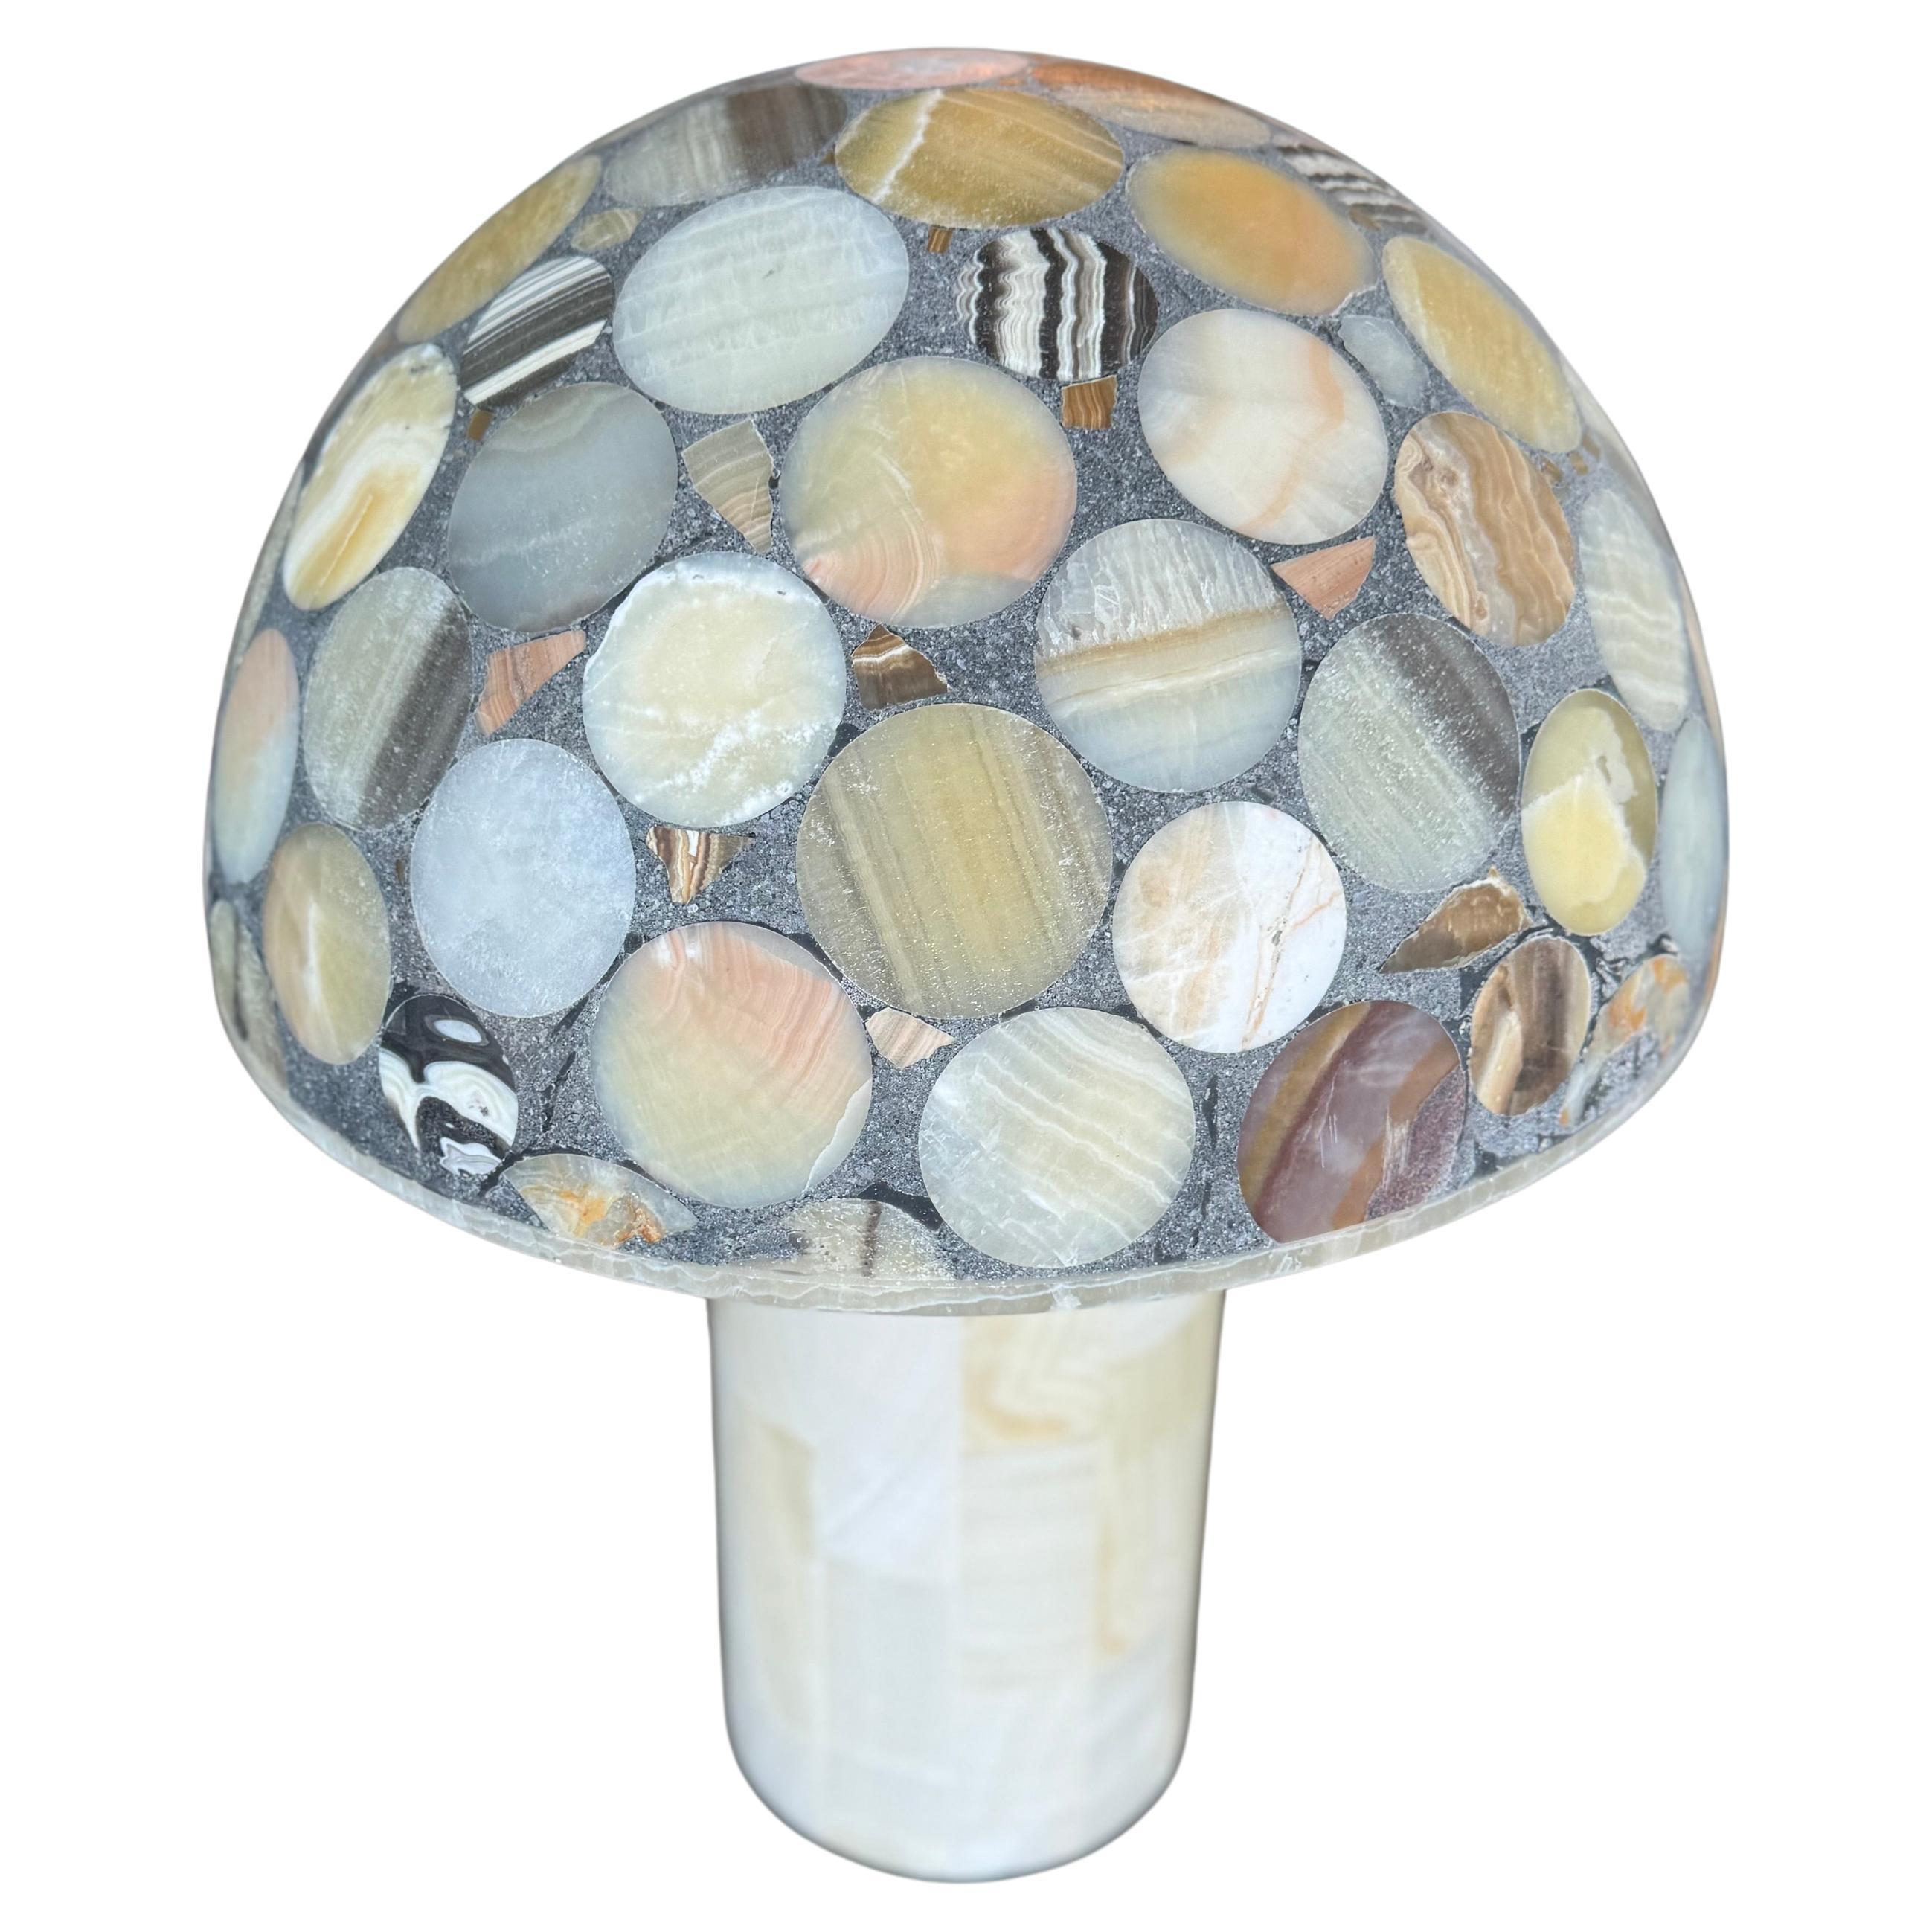 Seltene Onyx-Tischlampe, die sorgfältig mit einer faszinierenden Auswahl an verschiedenen Steinen gefertigt wurde. Das opulente Design zeichnet sich durch eine atemberaubende Mosaikintarsie aus, die die natürliche Schönheit und die komplizierten